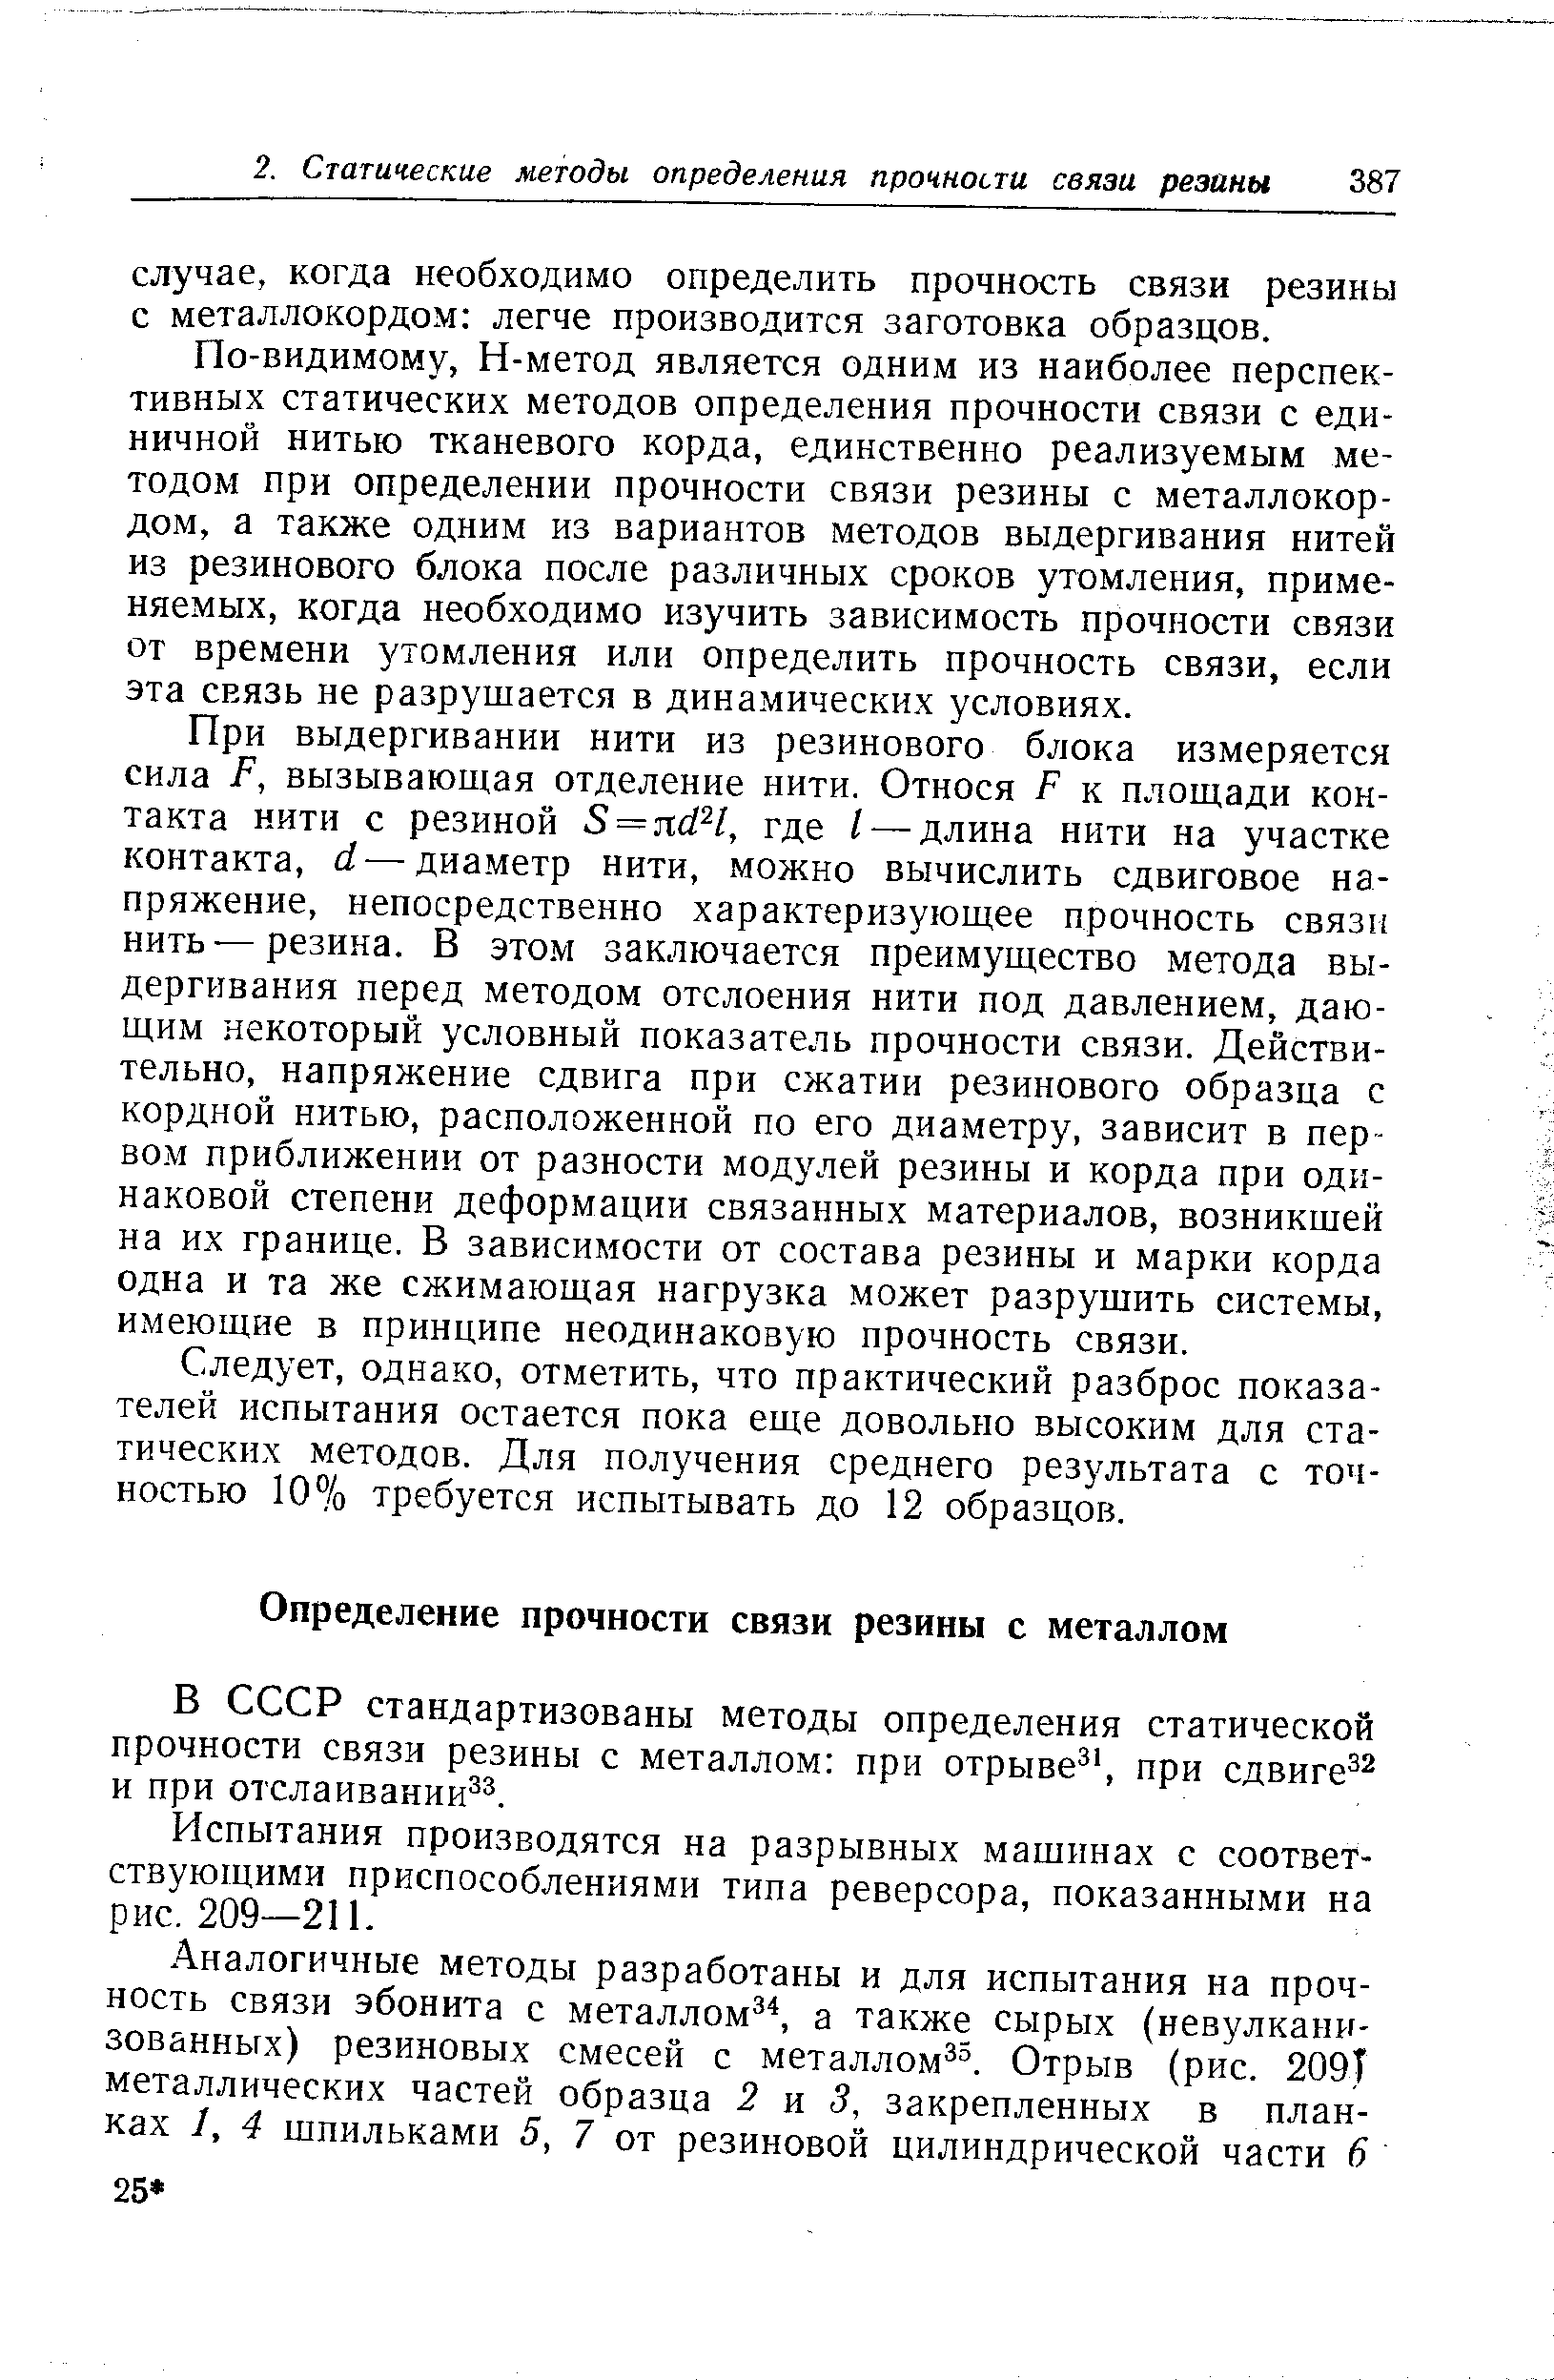 В СССР стандартизованы методы определения статической прочности связи резины с металлом при отрыве , при сдвиге и при отслаивании .